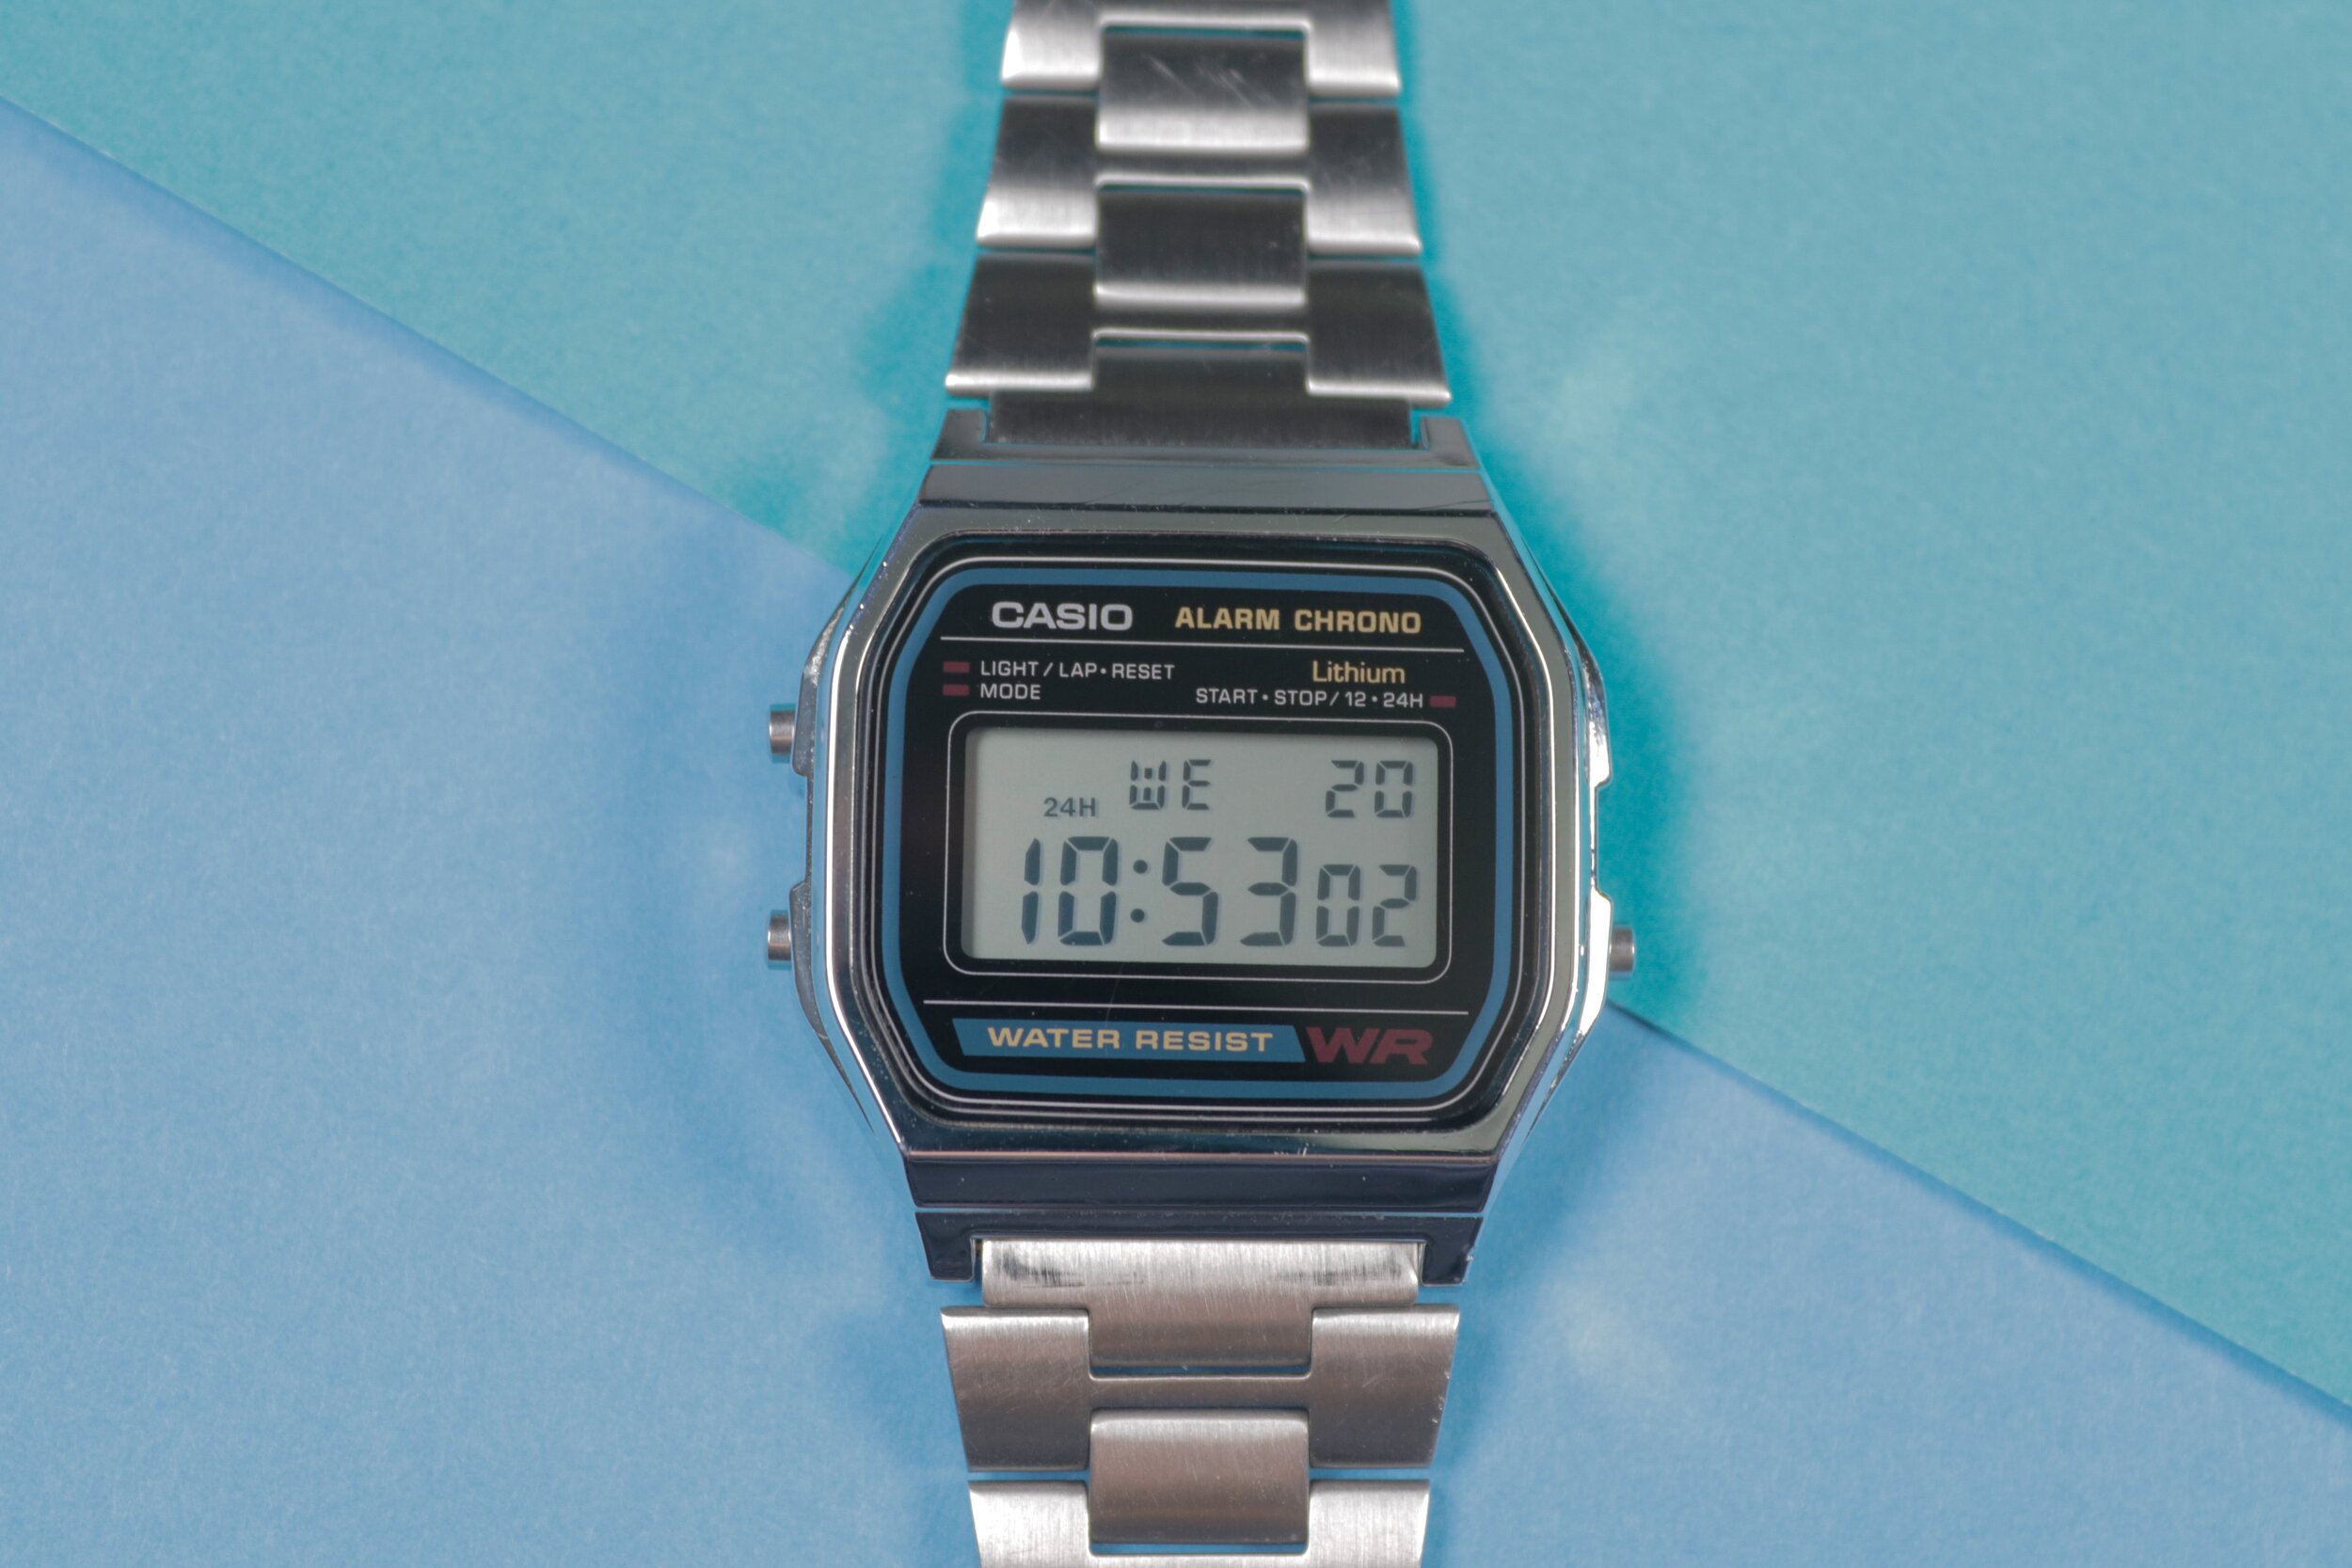 Casio A158 Vs A168 | The Retro Casio Watch Battle! — Ben's Watch Club